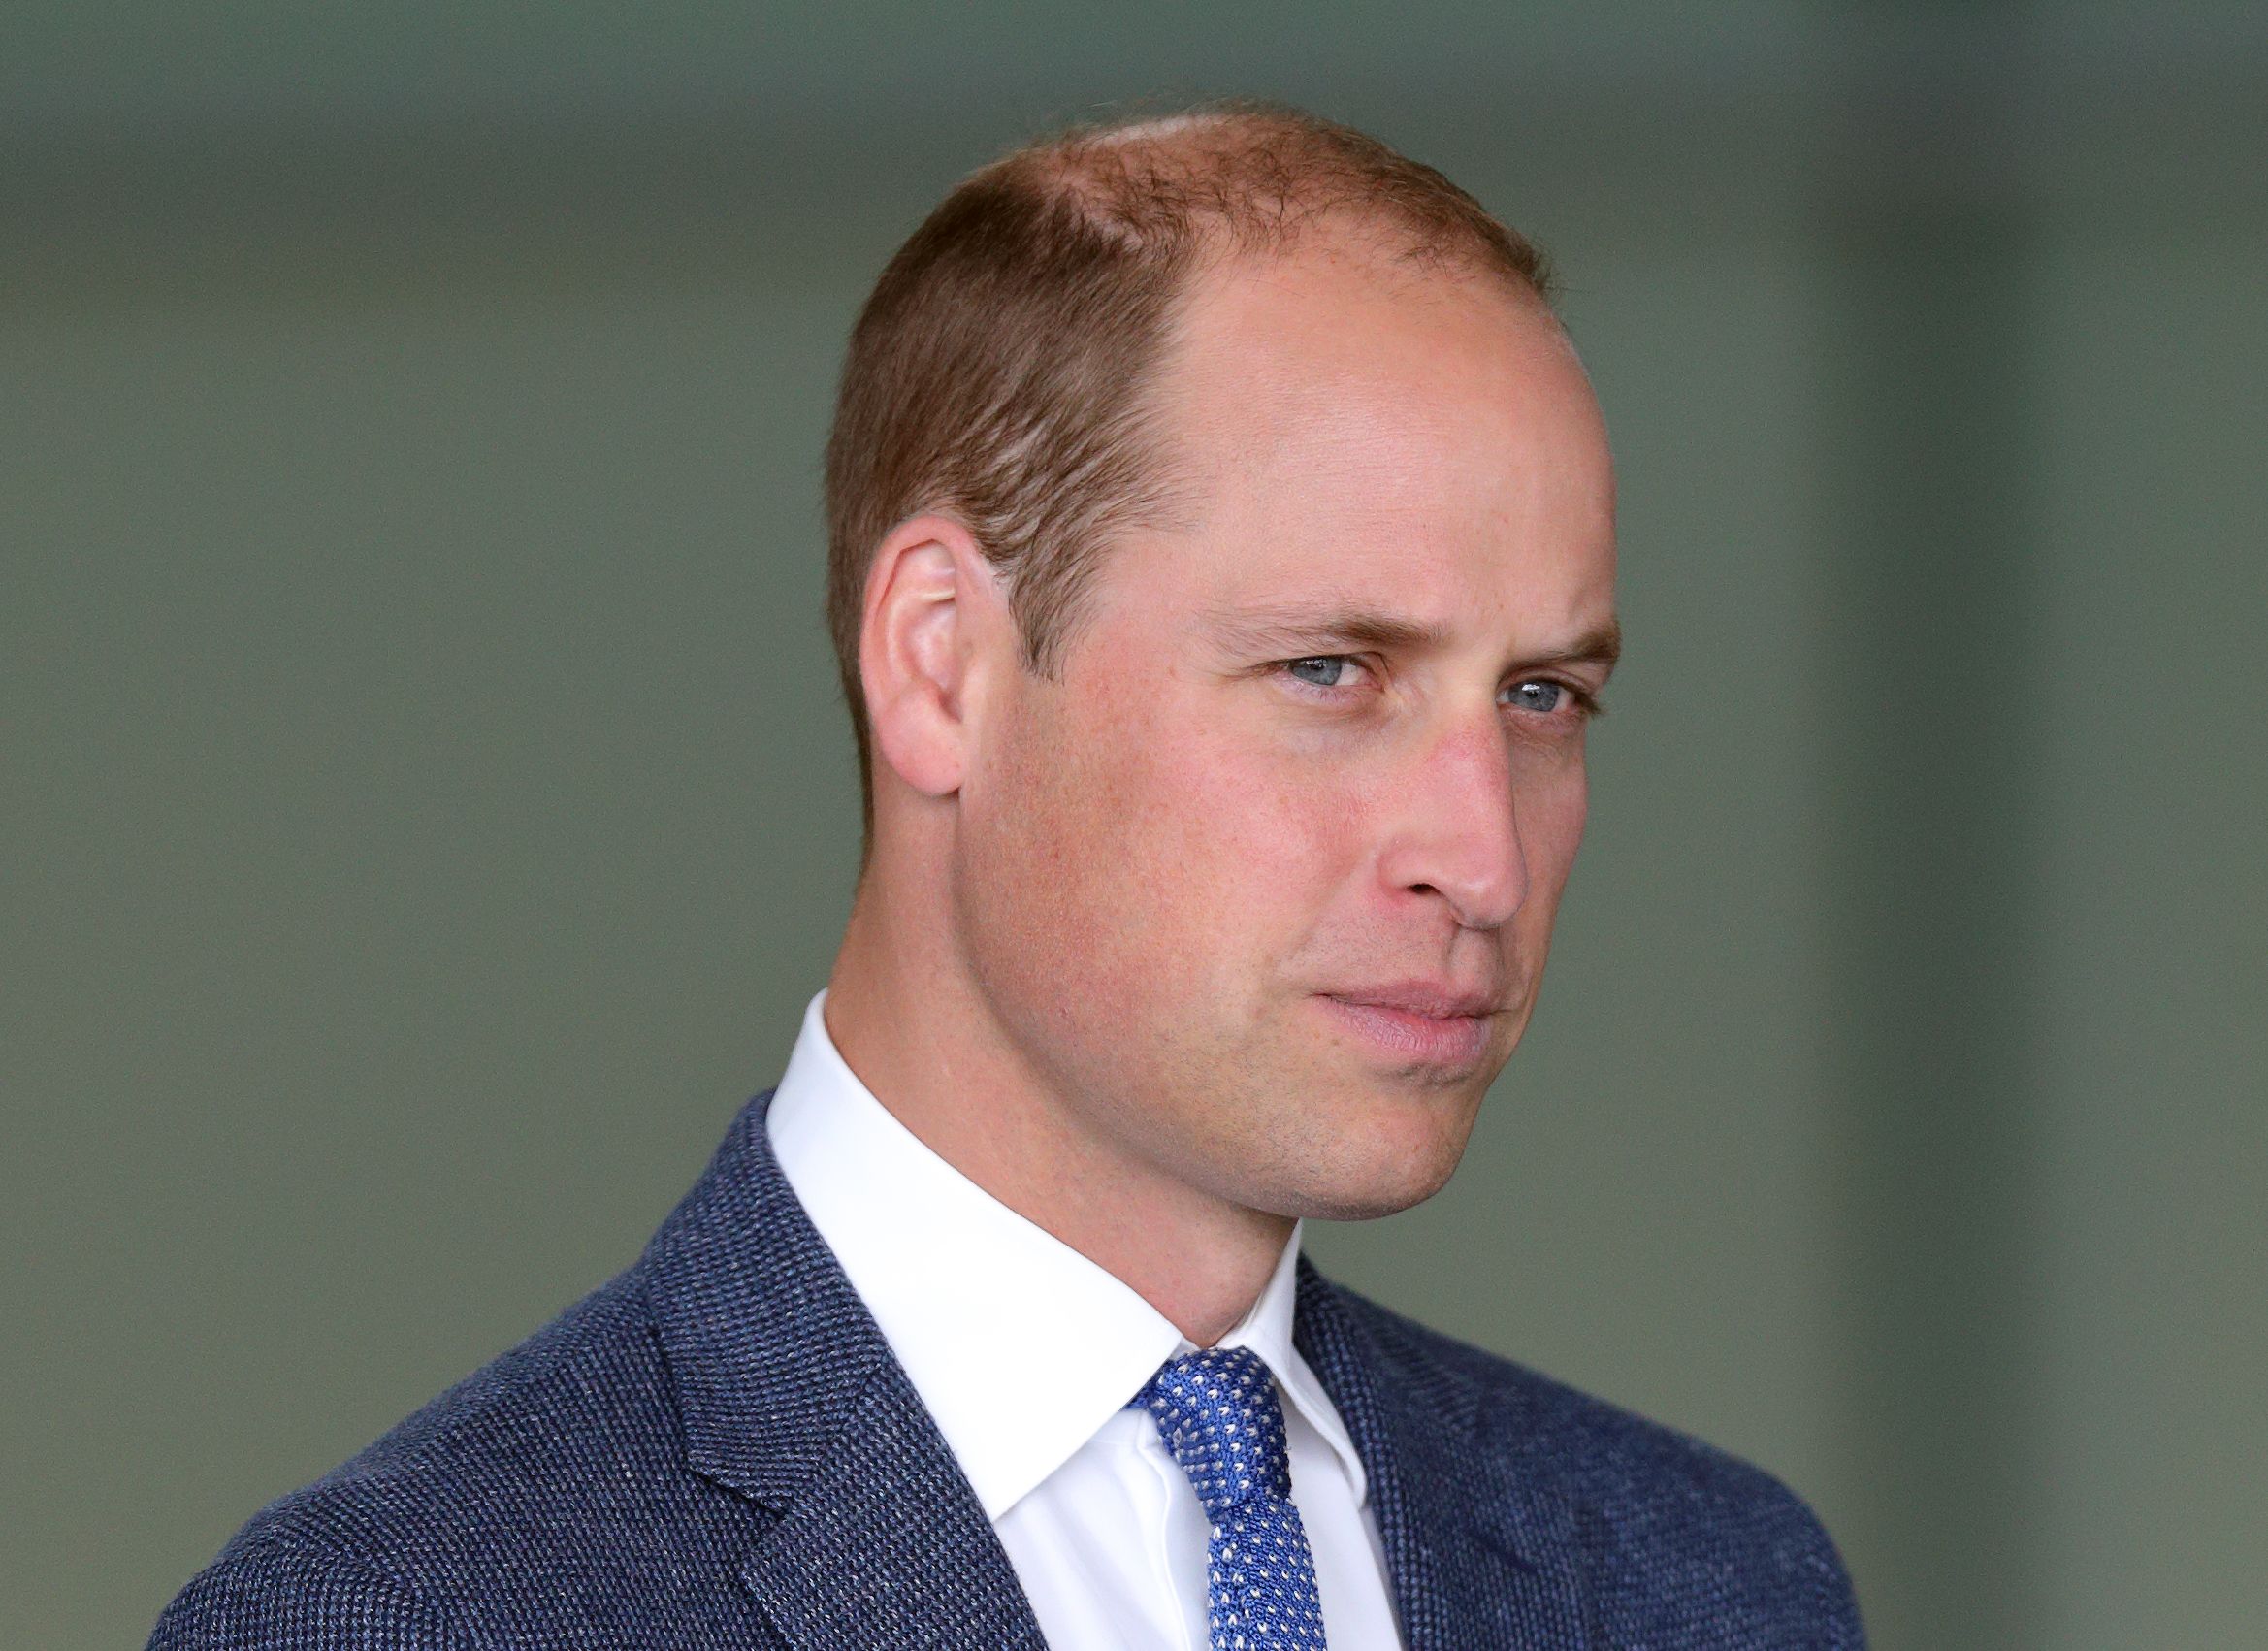 Video del Príncipe William enfrentado a un paparazzi pone en alerta a la corona